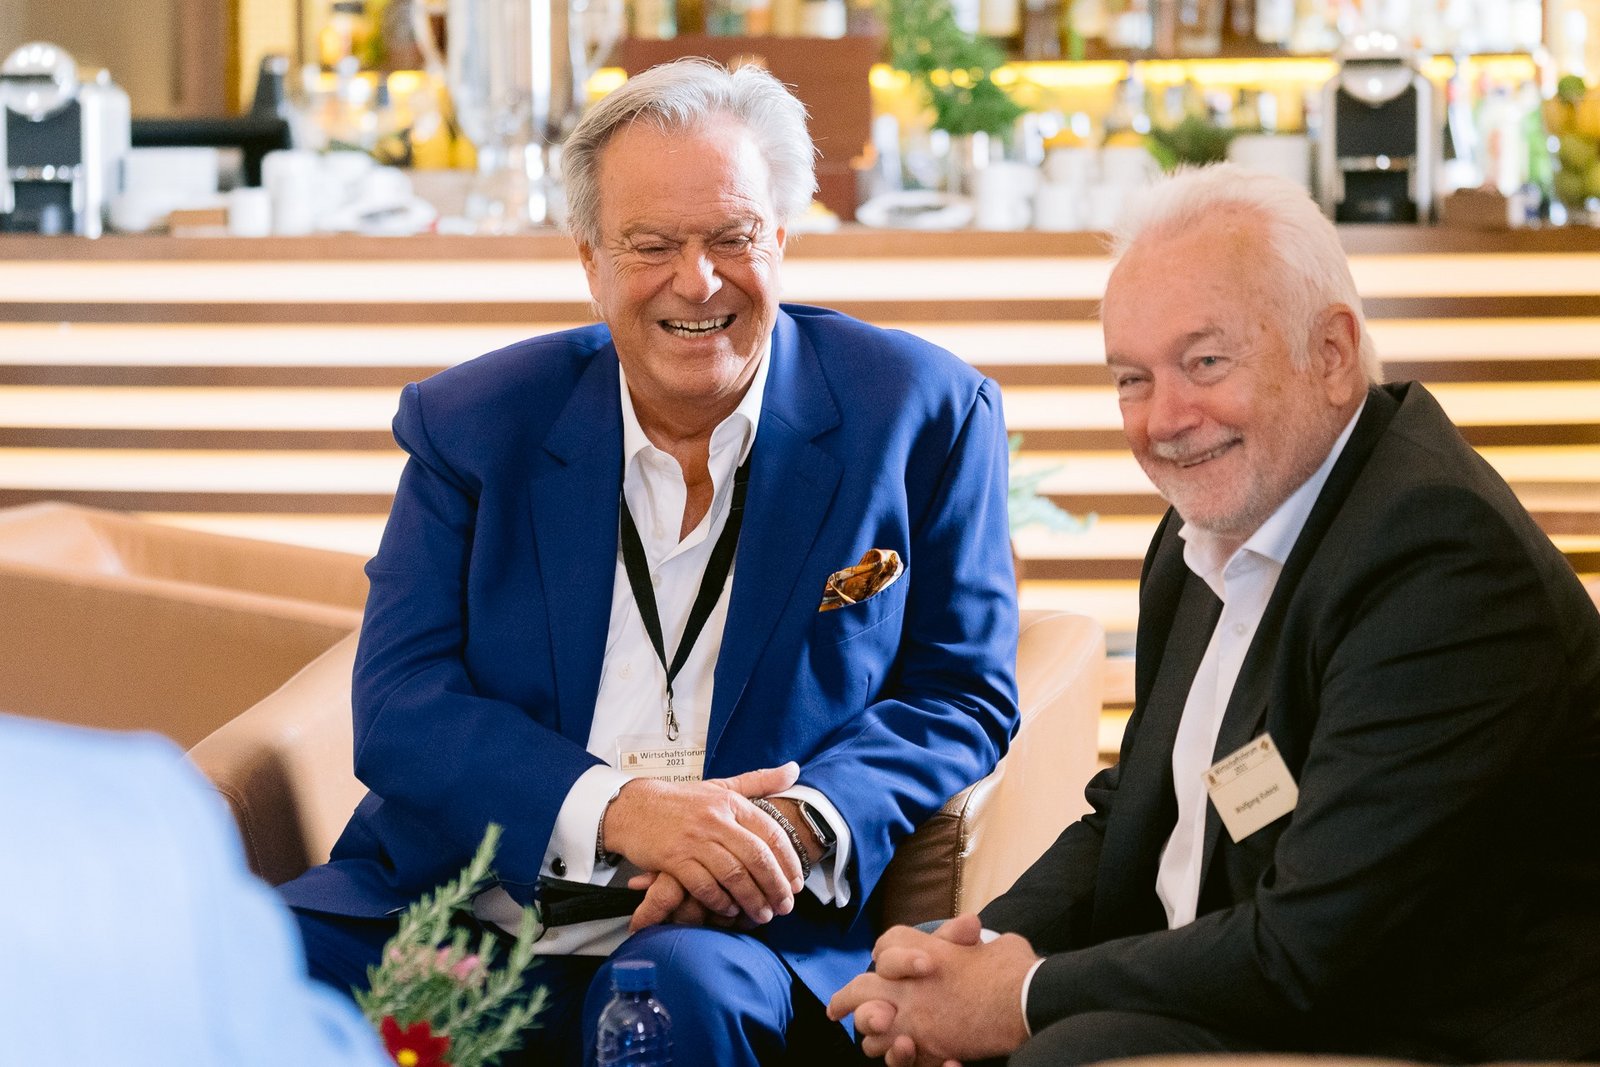 Willi Plattes und Wolfgang Kubicki tauschen sich beim Wirtschaftsforum Neu Denken im Juni 2021 im Hotel Castell Son Claret auf Mallorca aus.